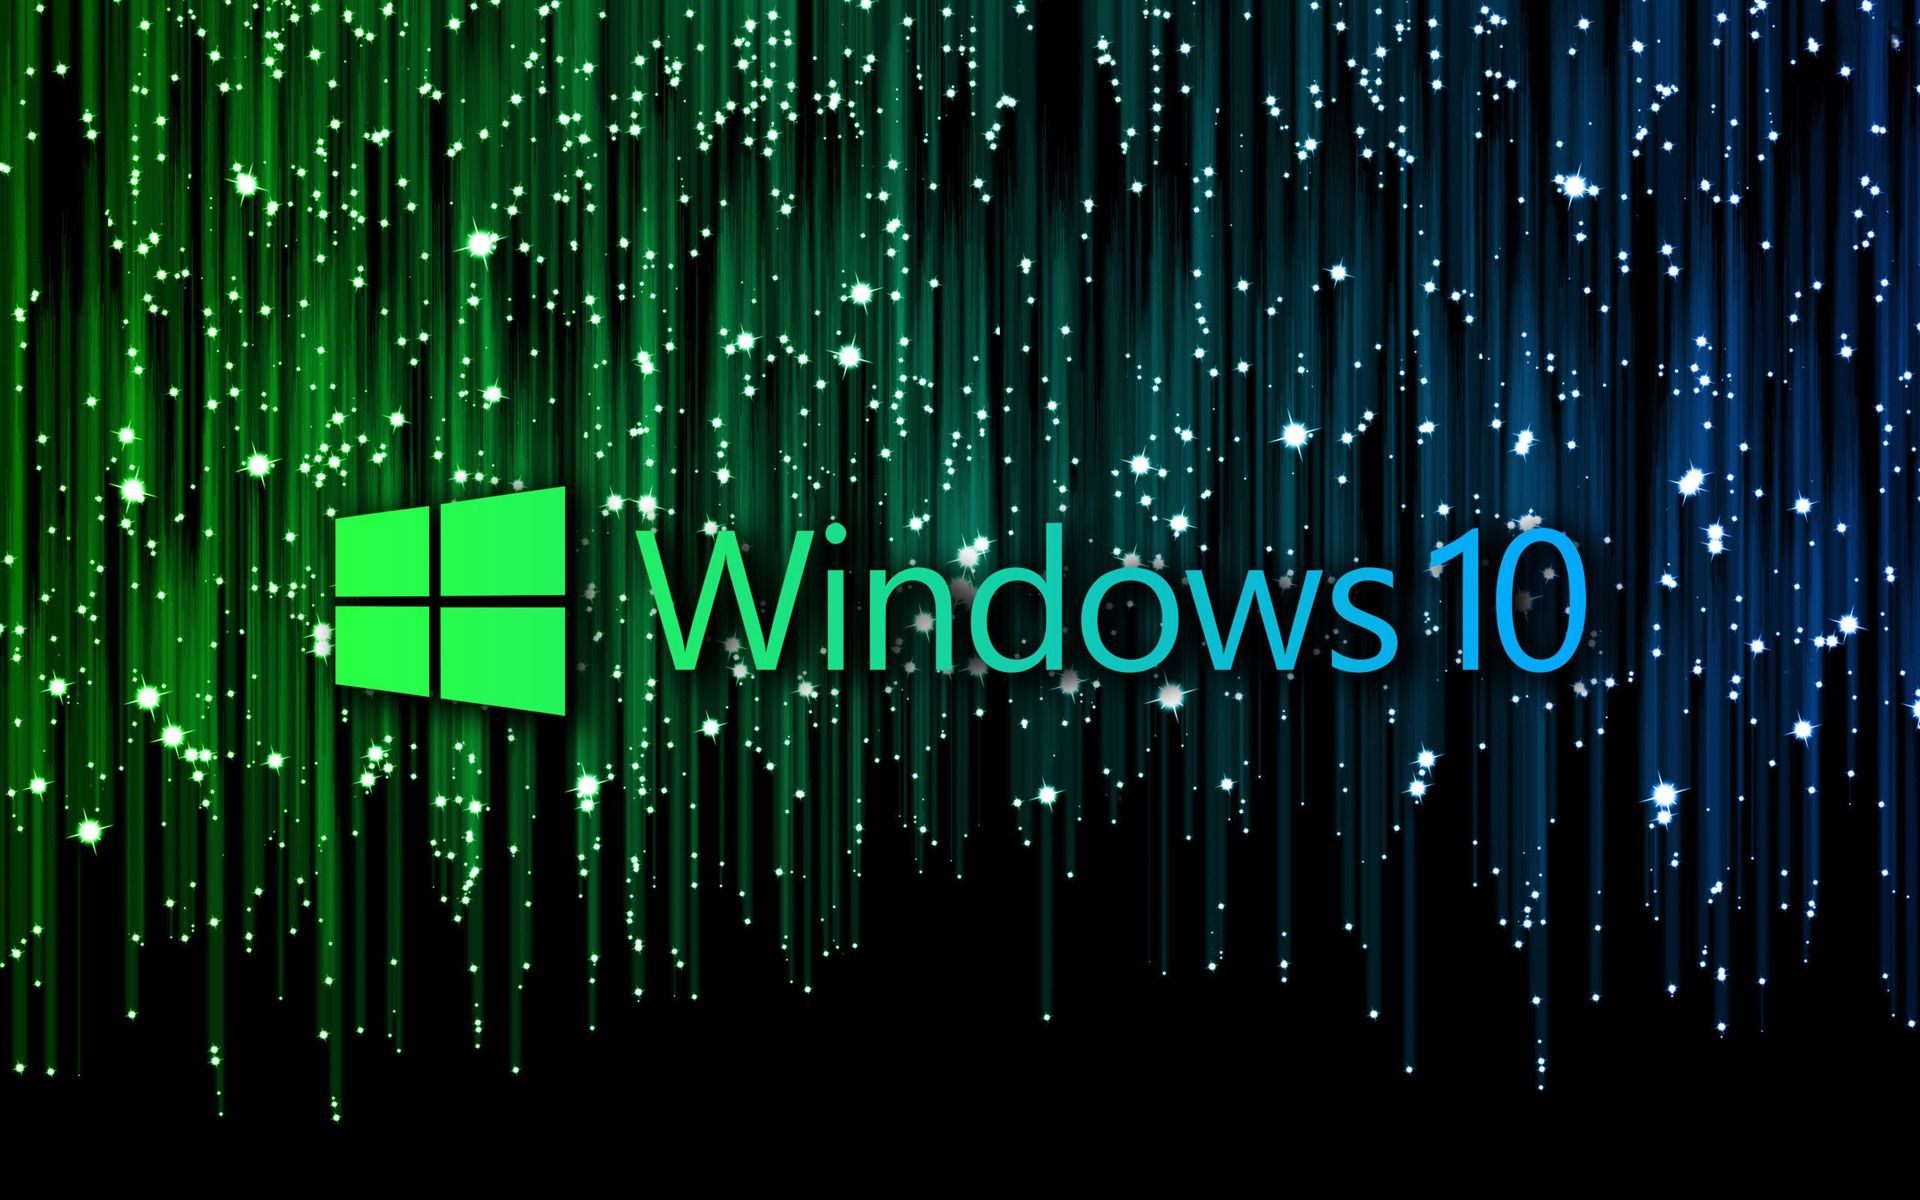 Windows 10 HD Theme Desktop Wallpapers 11 Preview